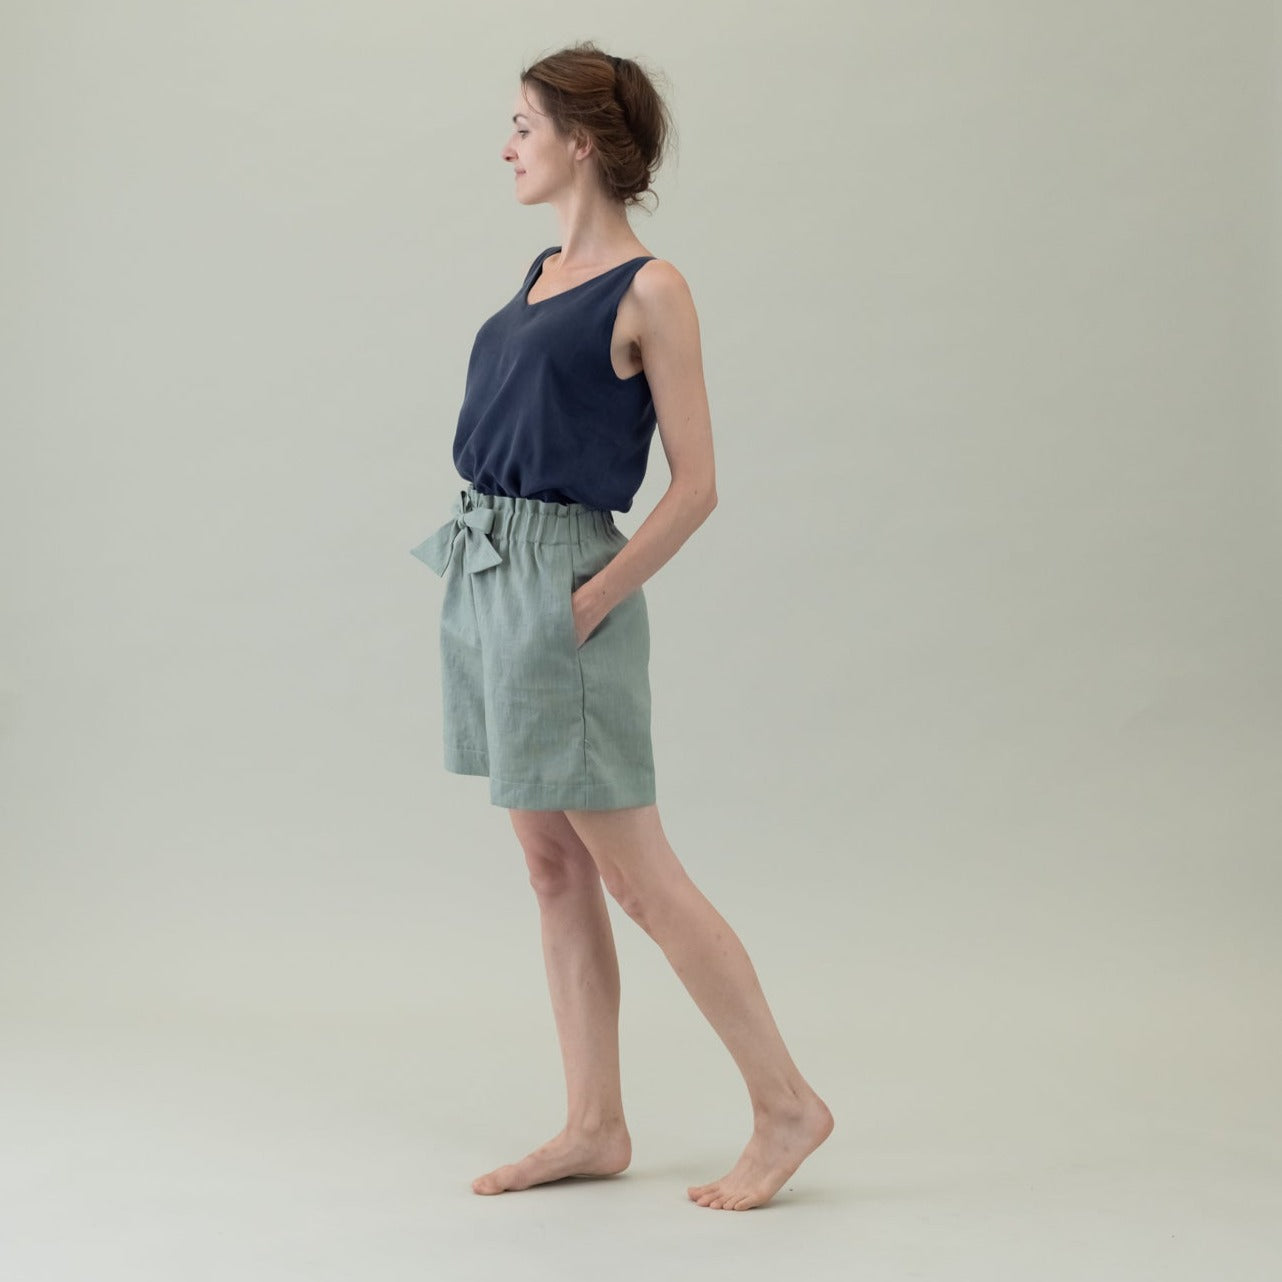 Leinen Damenhose mit Paperbag-Bund und Schleife in der Farbe Salbei Grün, Urheber: Mini & Eve